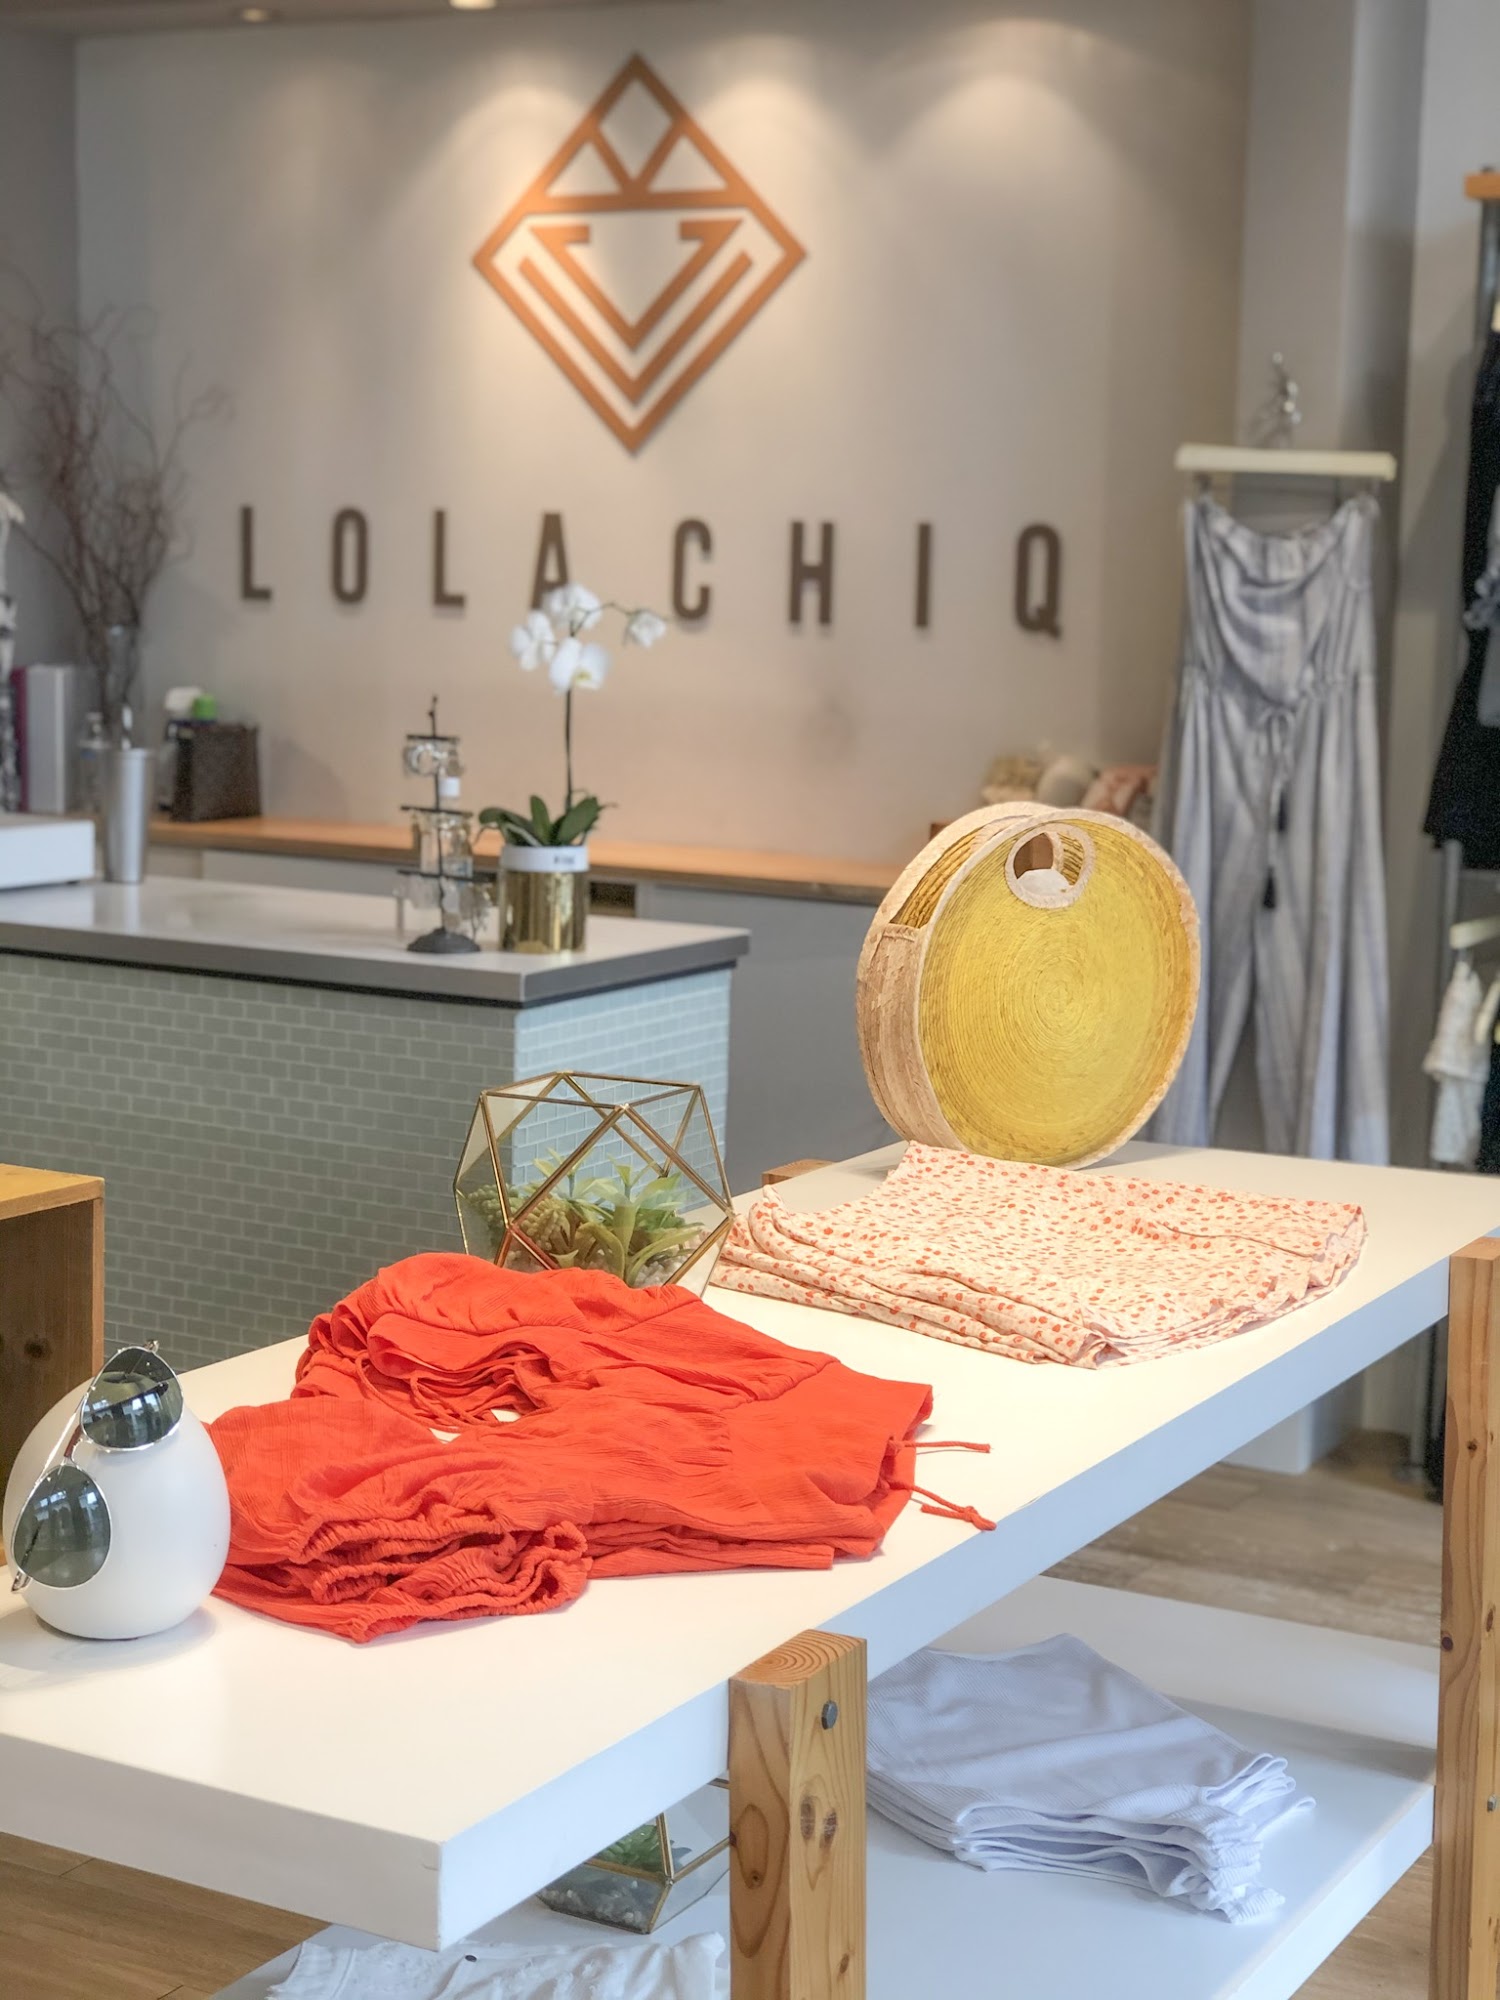 Lola Chiq Boutique